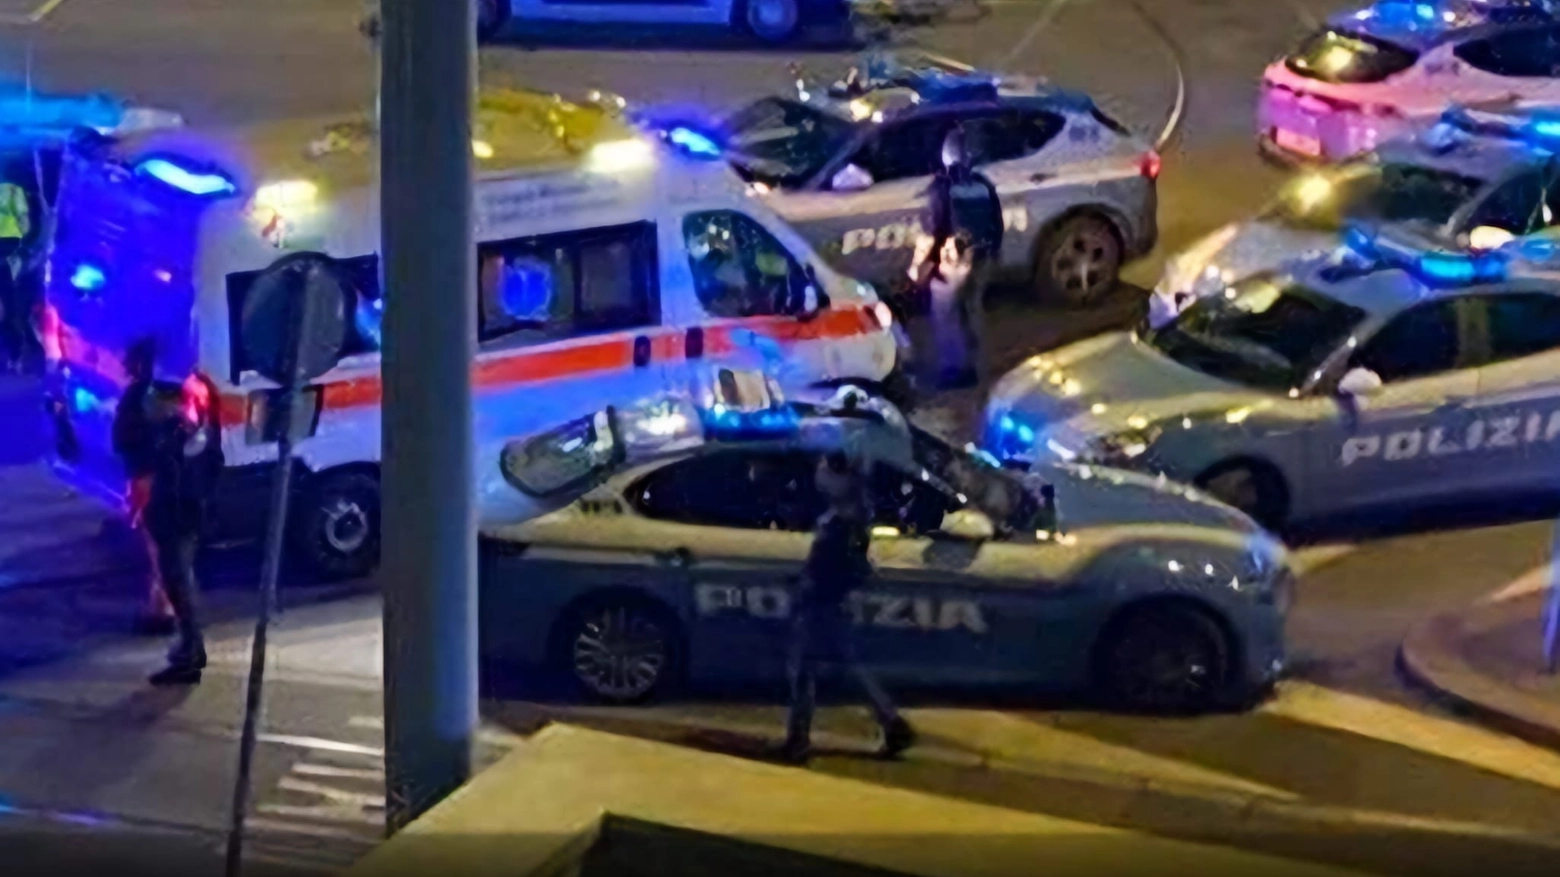 Polizia e soccorsi intervenuti alla stazione di Lambrate a Milano